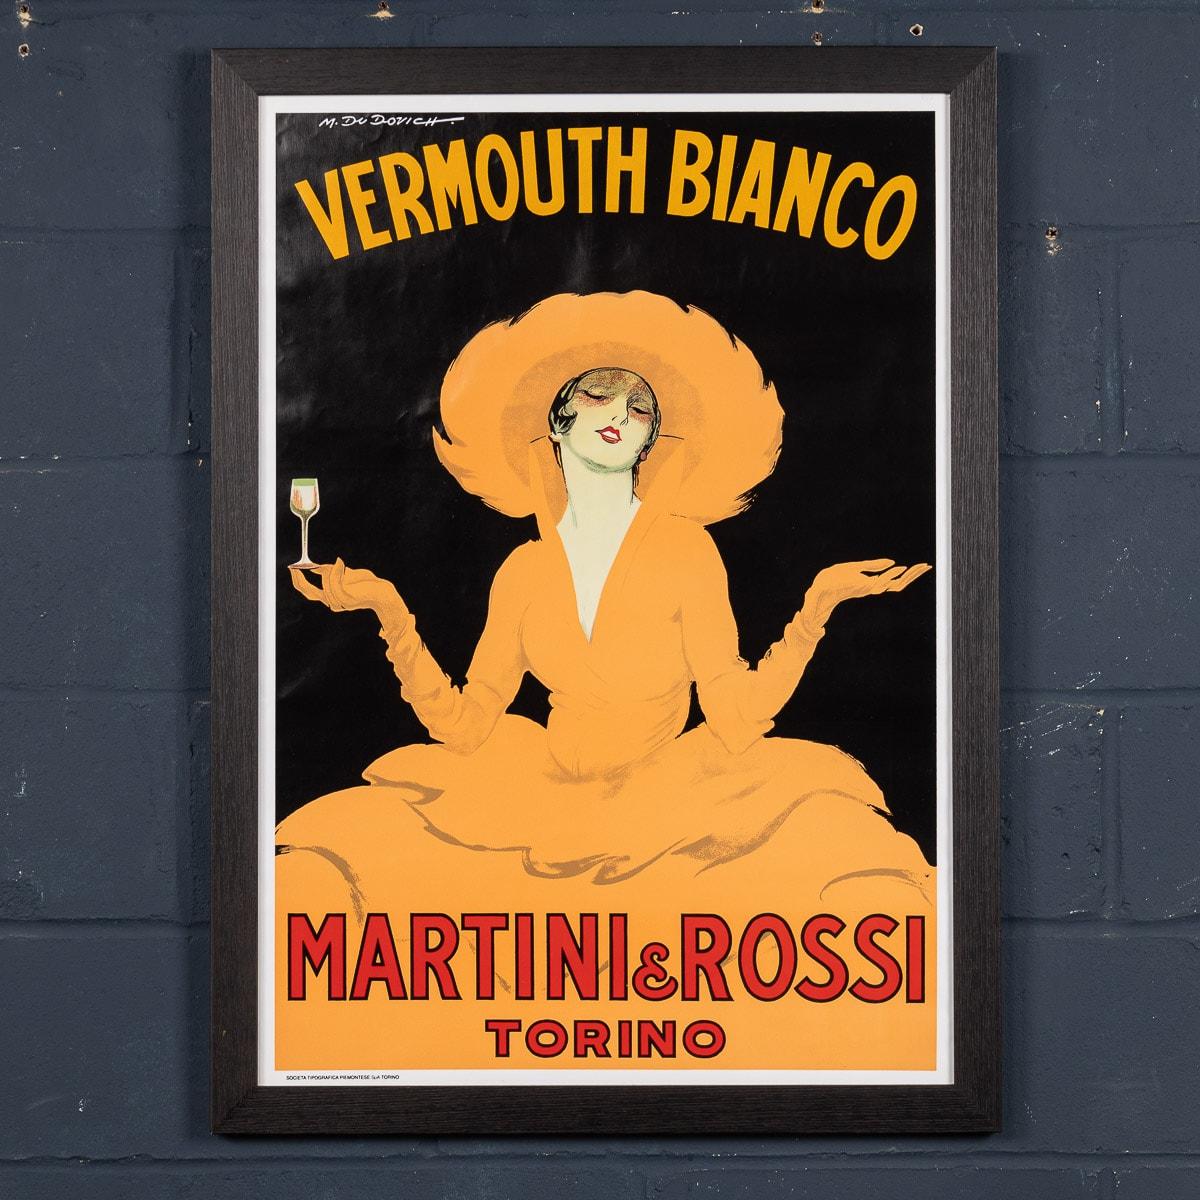 Cette remarquable affiche de Martini a été conçue dans les années 1930 et sa popularité était telle qu'elle était encore utilisée dans les années 1950. Il a été produit pour la société de boissons alcoolisées Martini & Rossi. Cette affiche